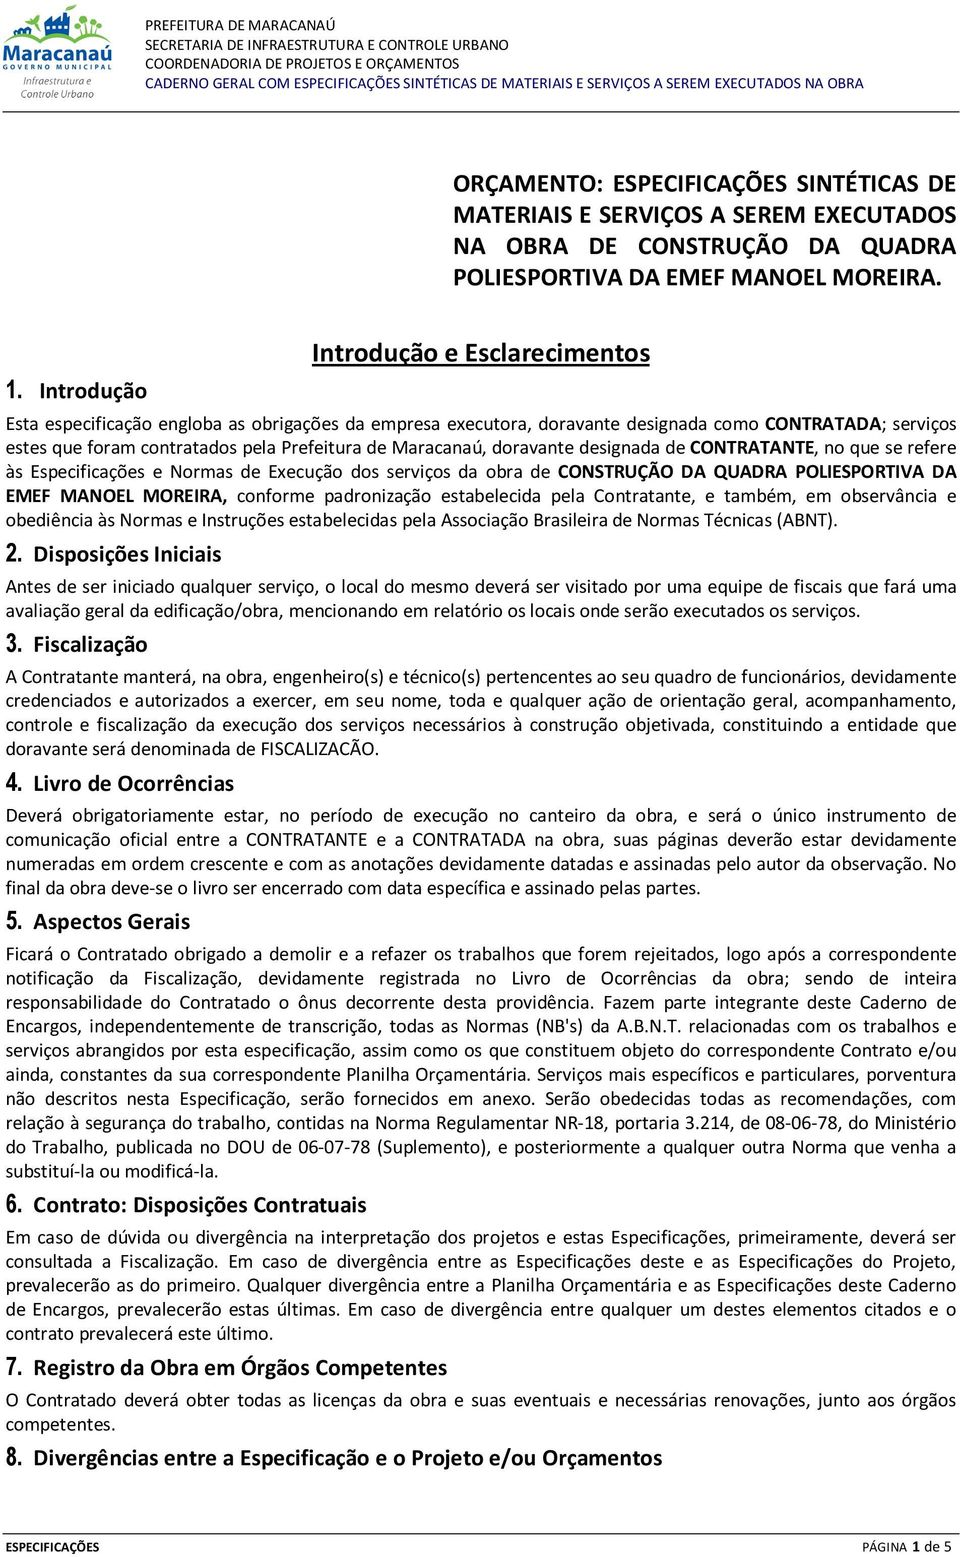 Maracanaú, doravante designada de CONTRATANTE, no que se refere às Especificações e Normas de Execução dos serviços da obra de CONSTRUÇÃO DA QUADRA POLIESPORTIVA DA EMEF MANOEL MOREIRA, conforme